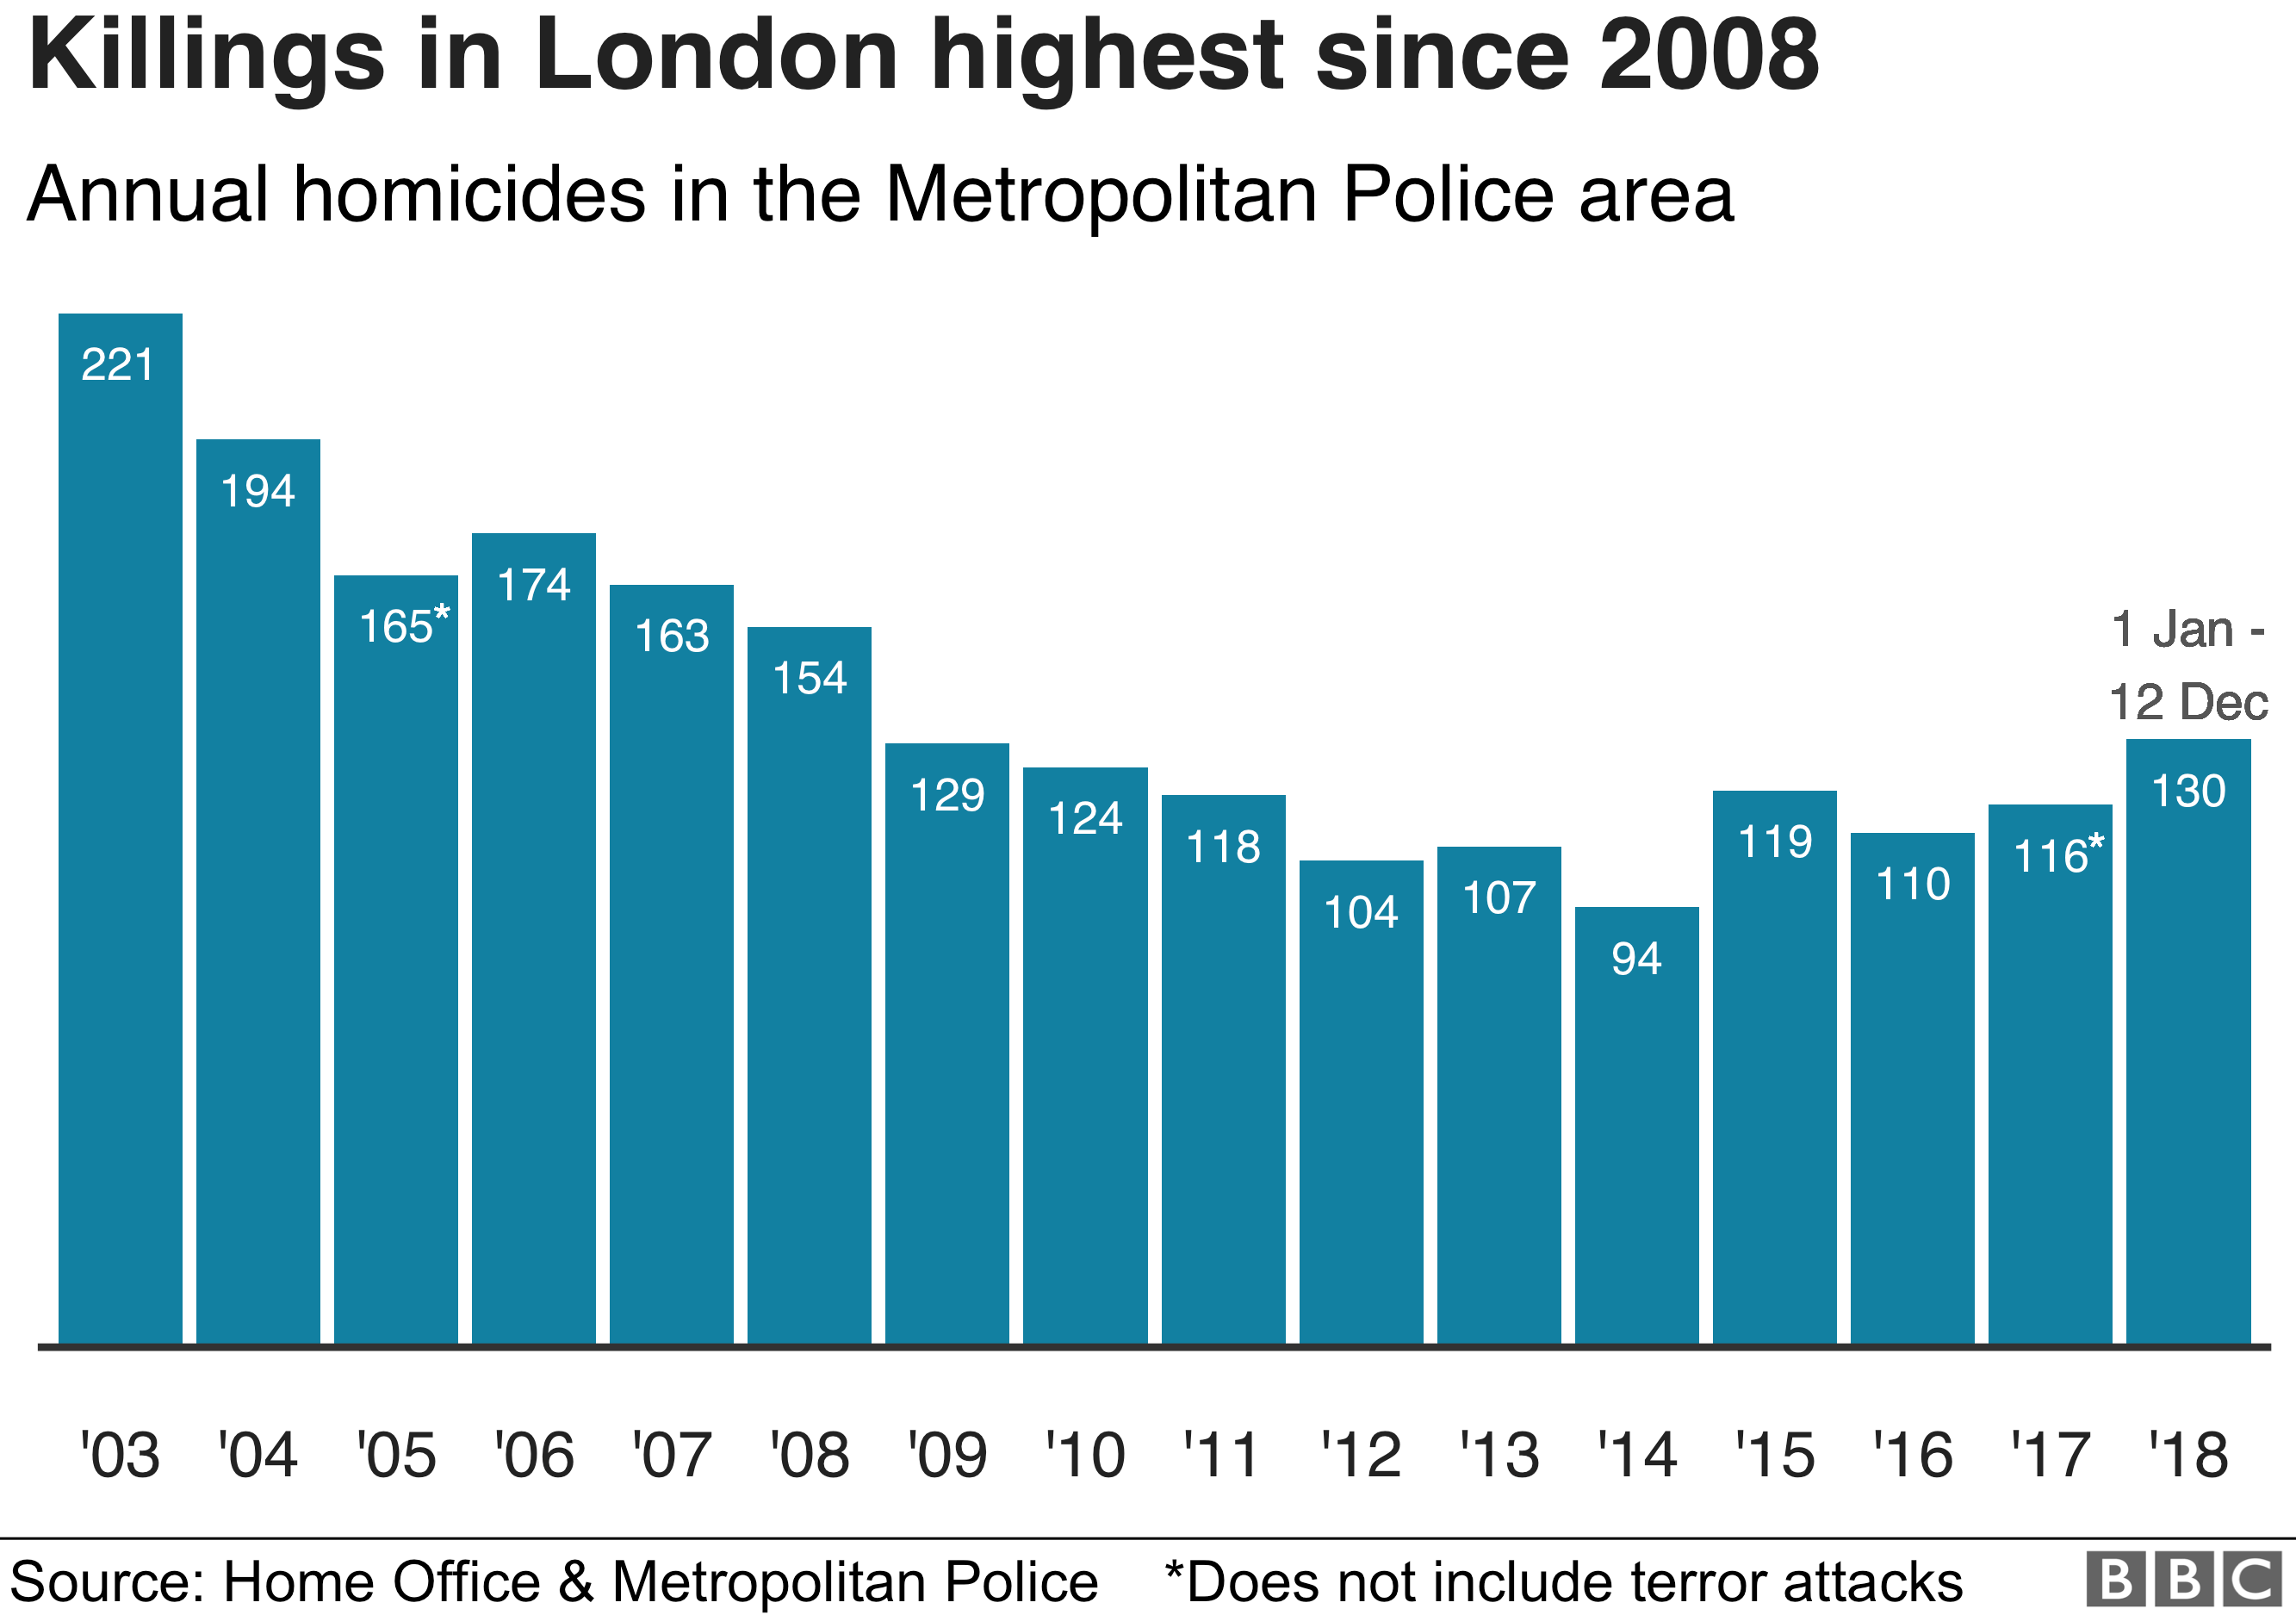 Количество убийств в Лондоне достигло 12 декабря 12 декабря. Это самое большое количество убийств за год с 2008 года.